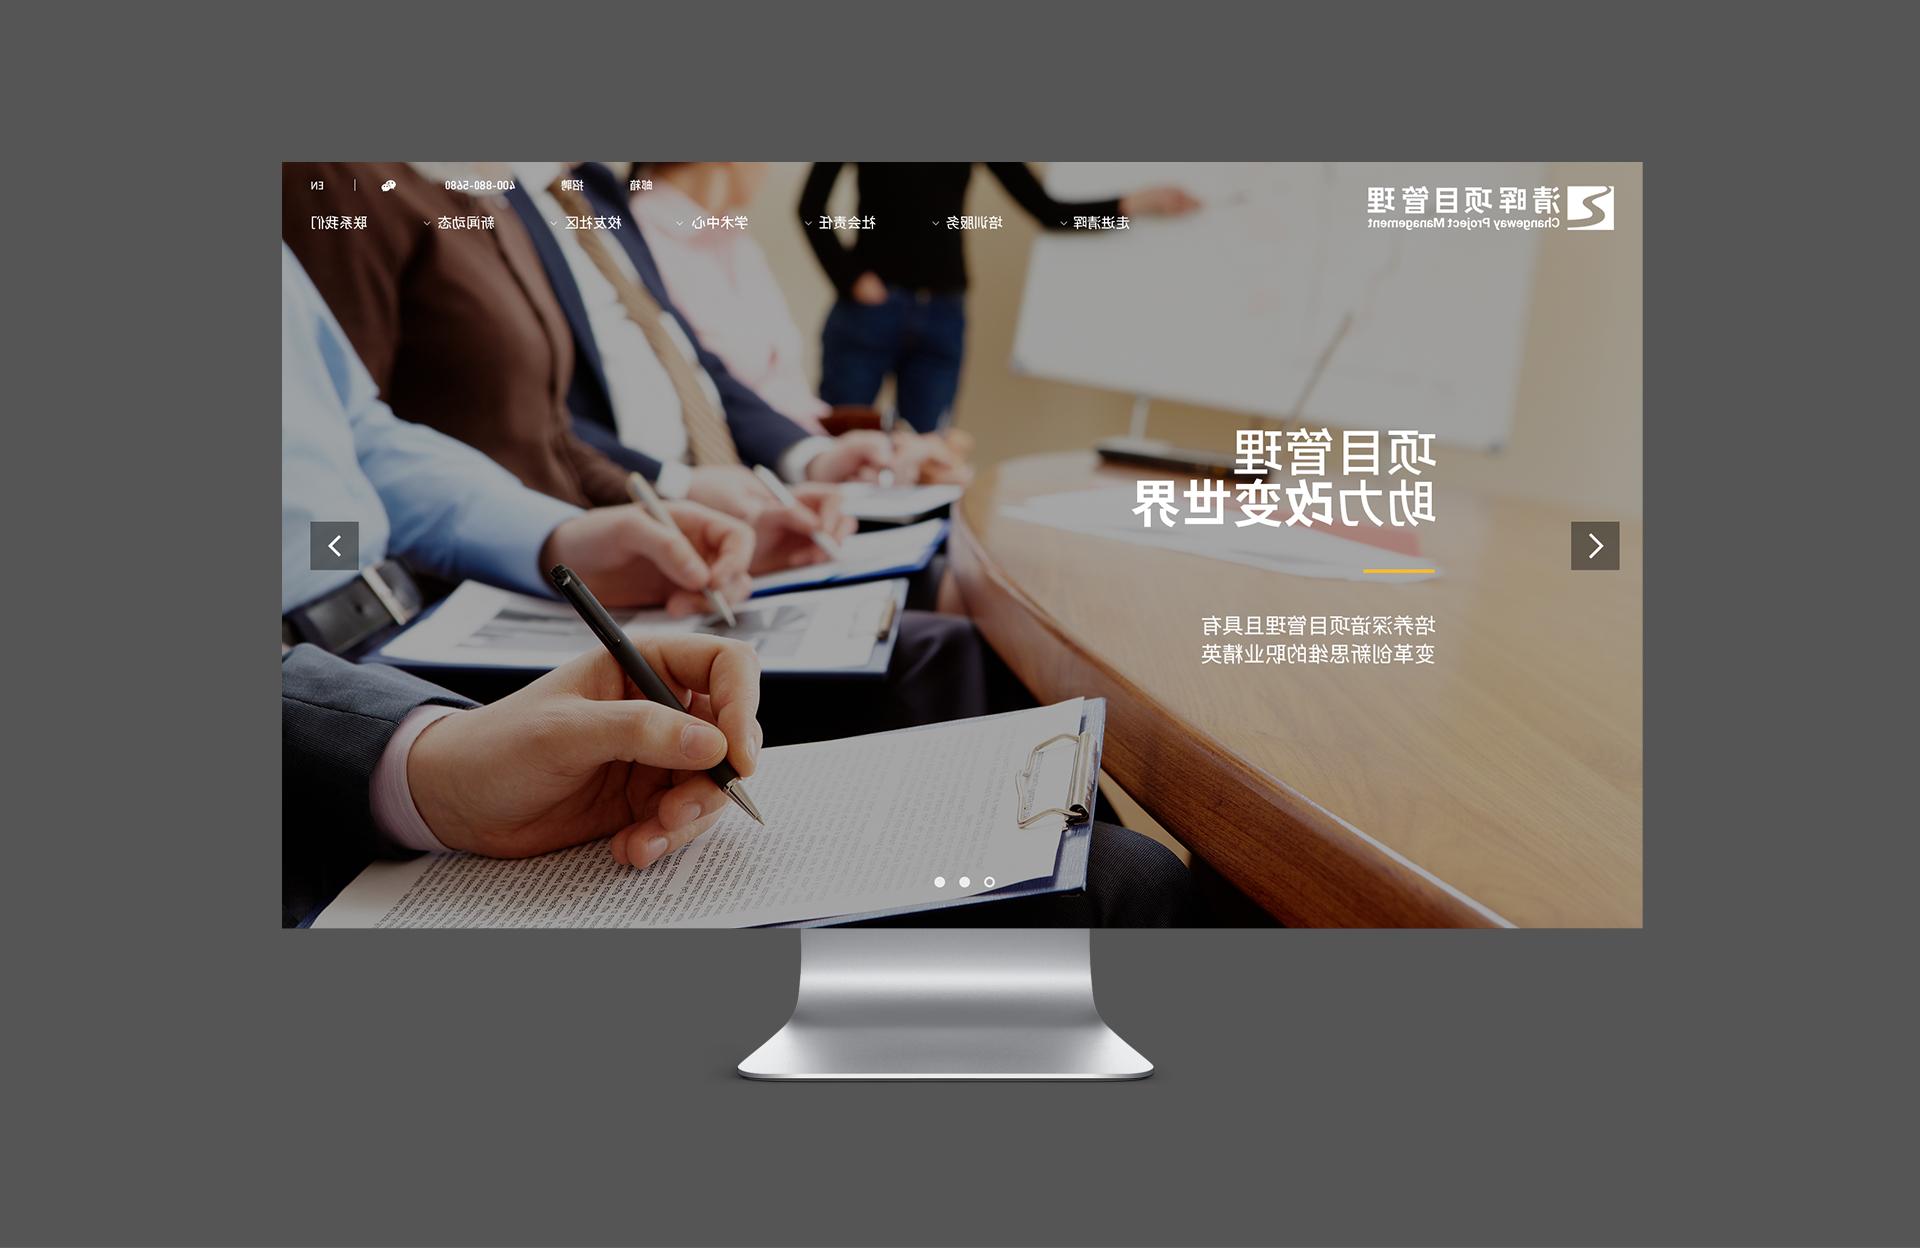 清晖项目管理高端网站建设案例